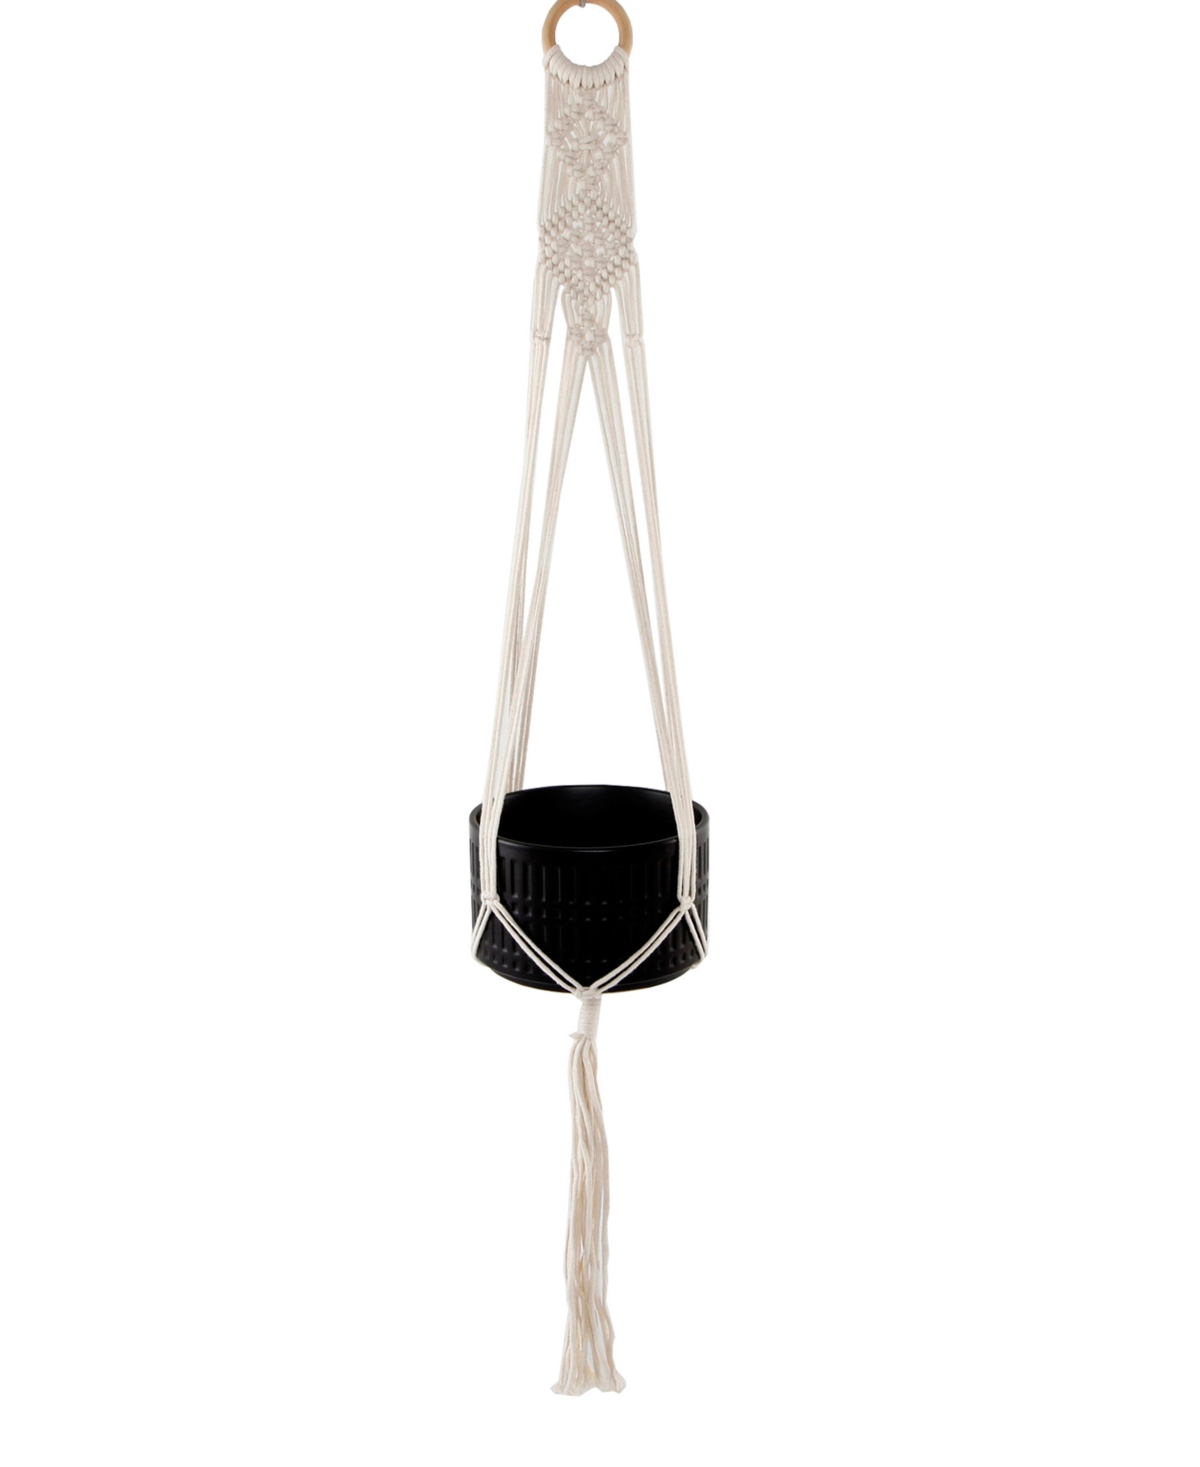 Hanging Macrame Planter Hanger, 6" - White